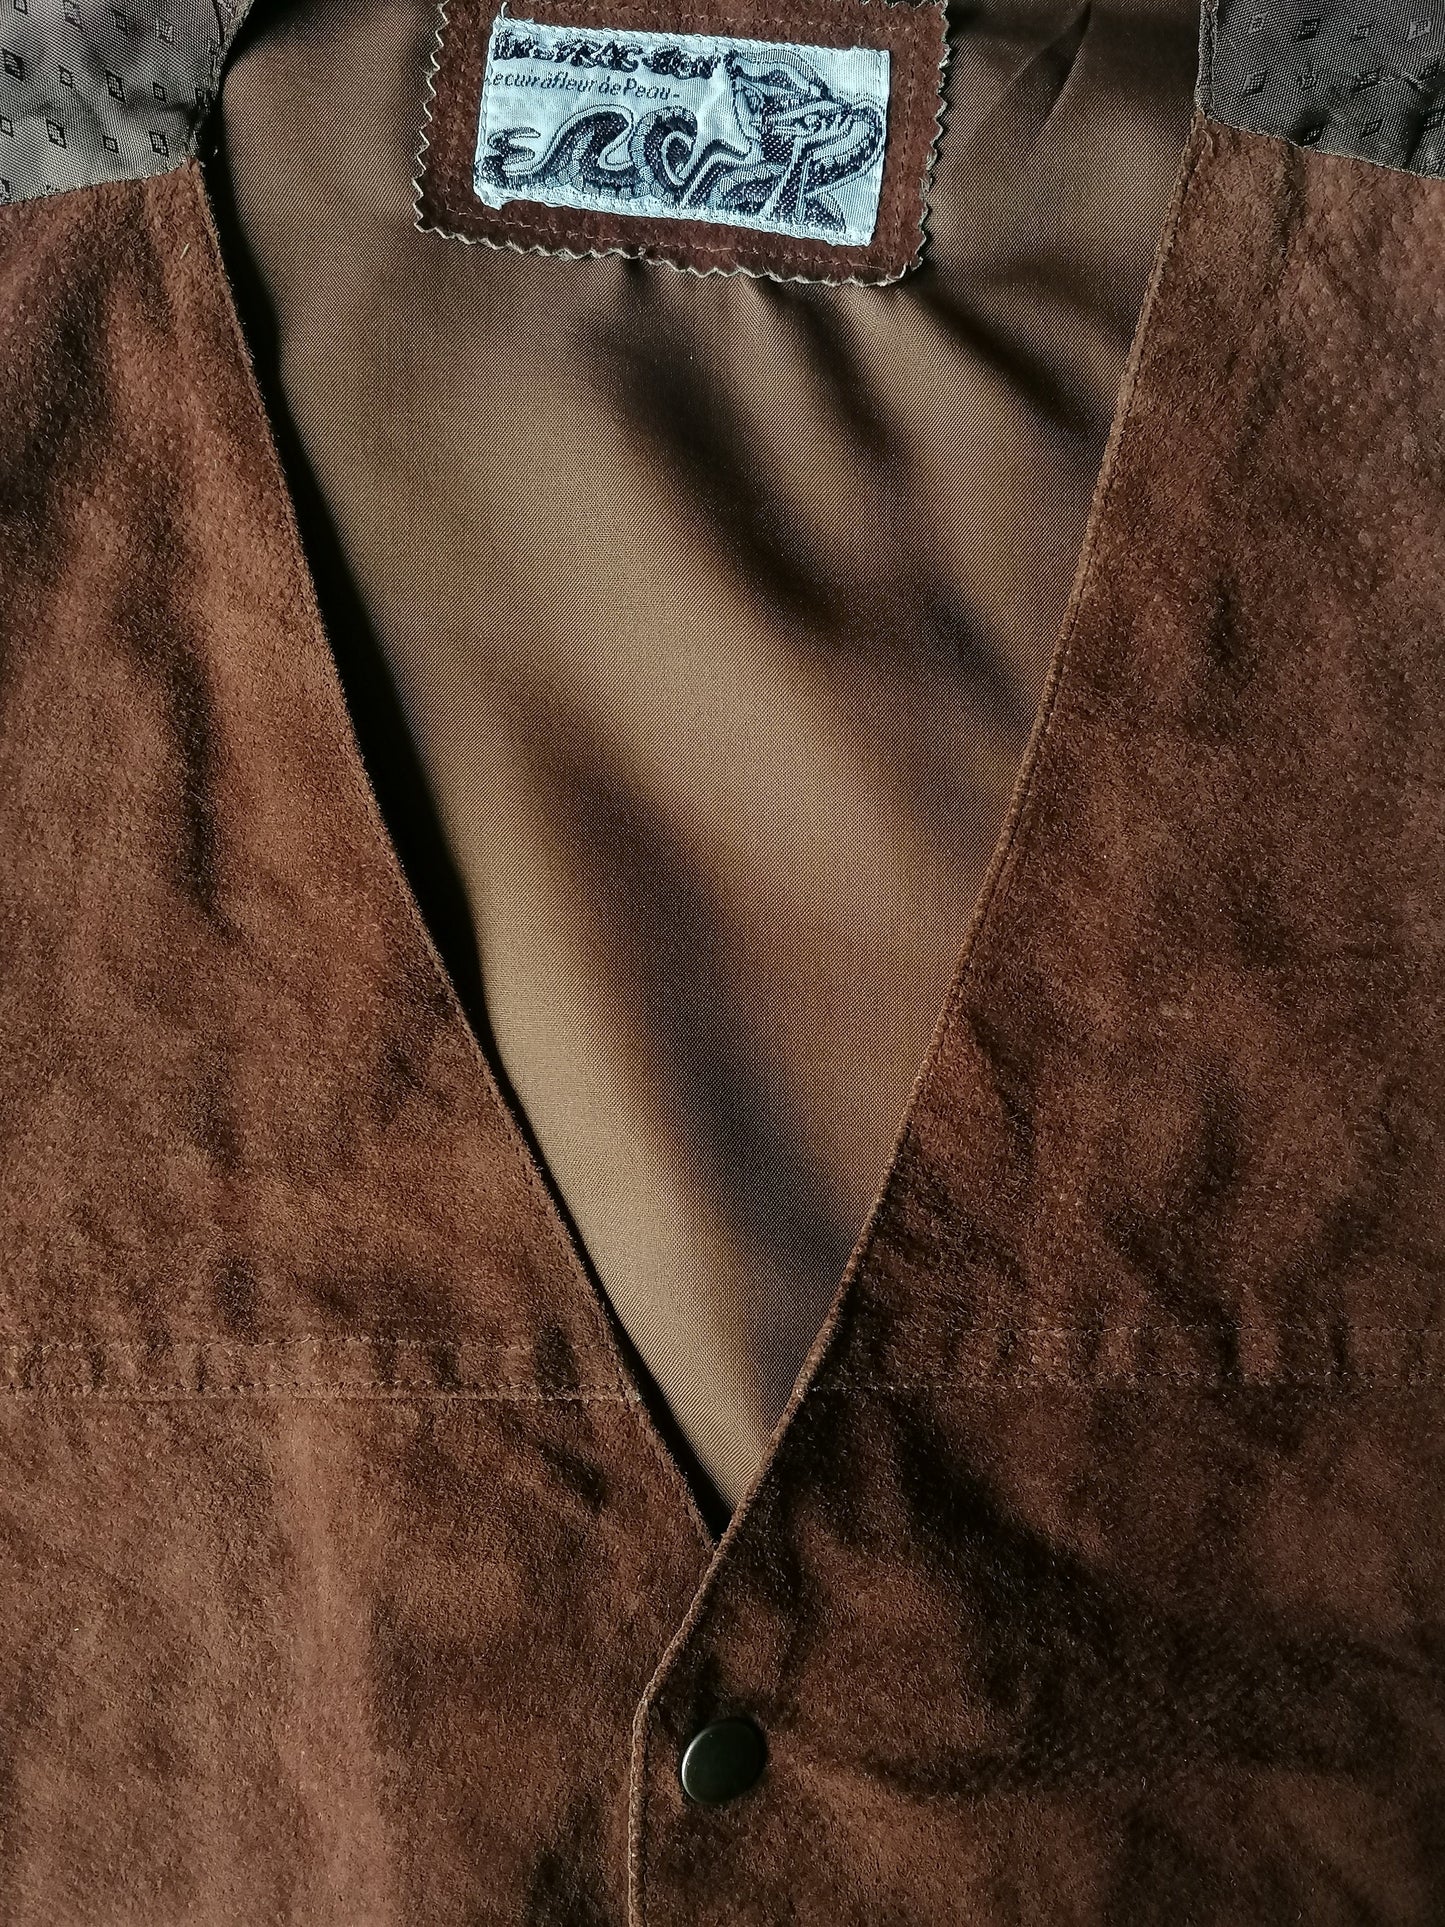 In-Frac-Tigs Ledermantel mit Pressebutter. Braun gefärbt. Größe M.